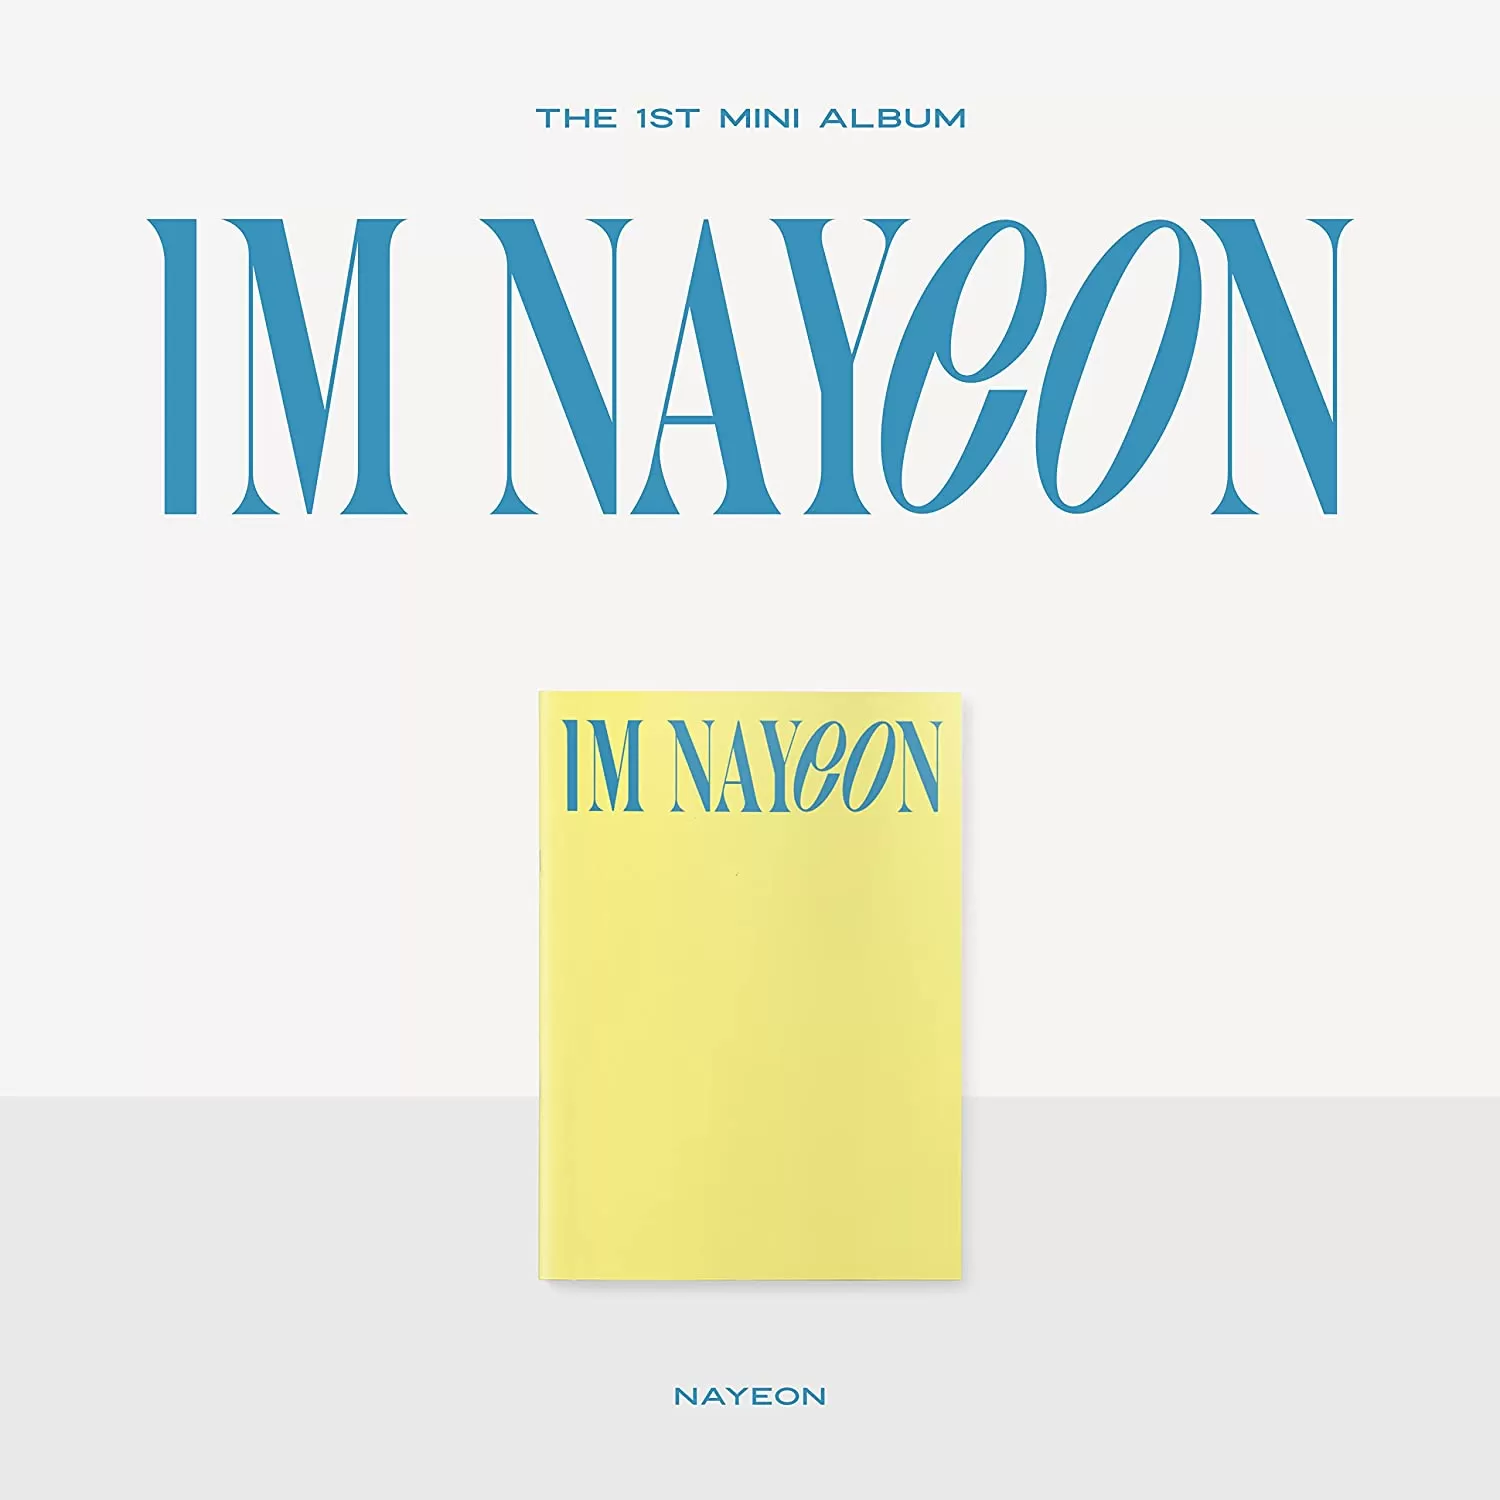 دانلود آلبوم جدید نایون (توایس) به نام IM NAYEON